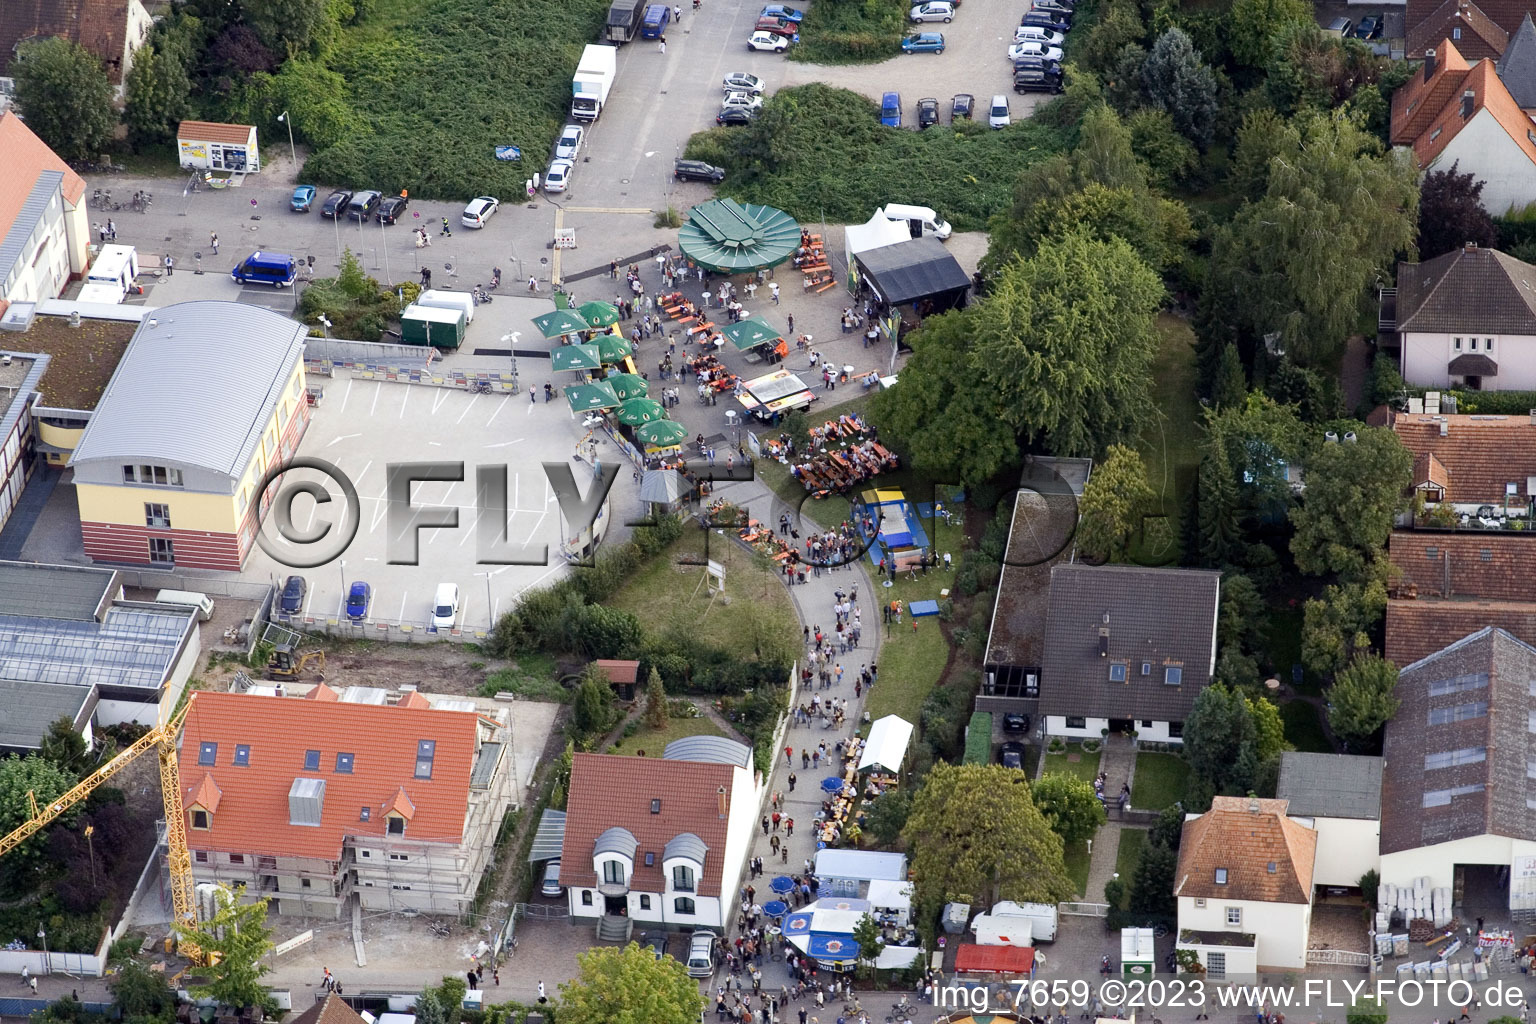 Vue aérienne de Fête municipale, place communautaire à Kandel dans le département Rhénanie-Palatinat, Allemagne